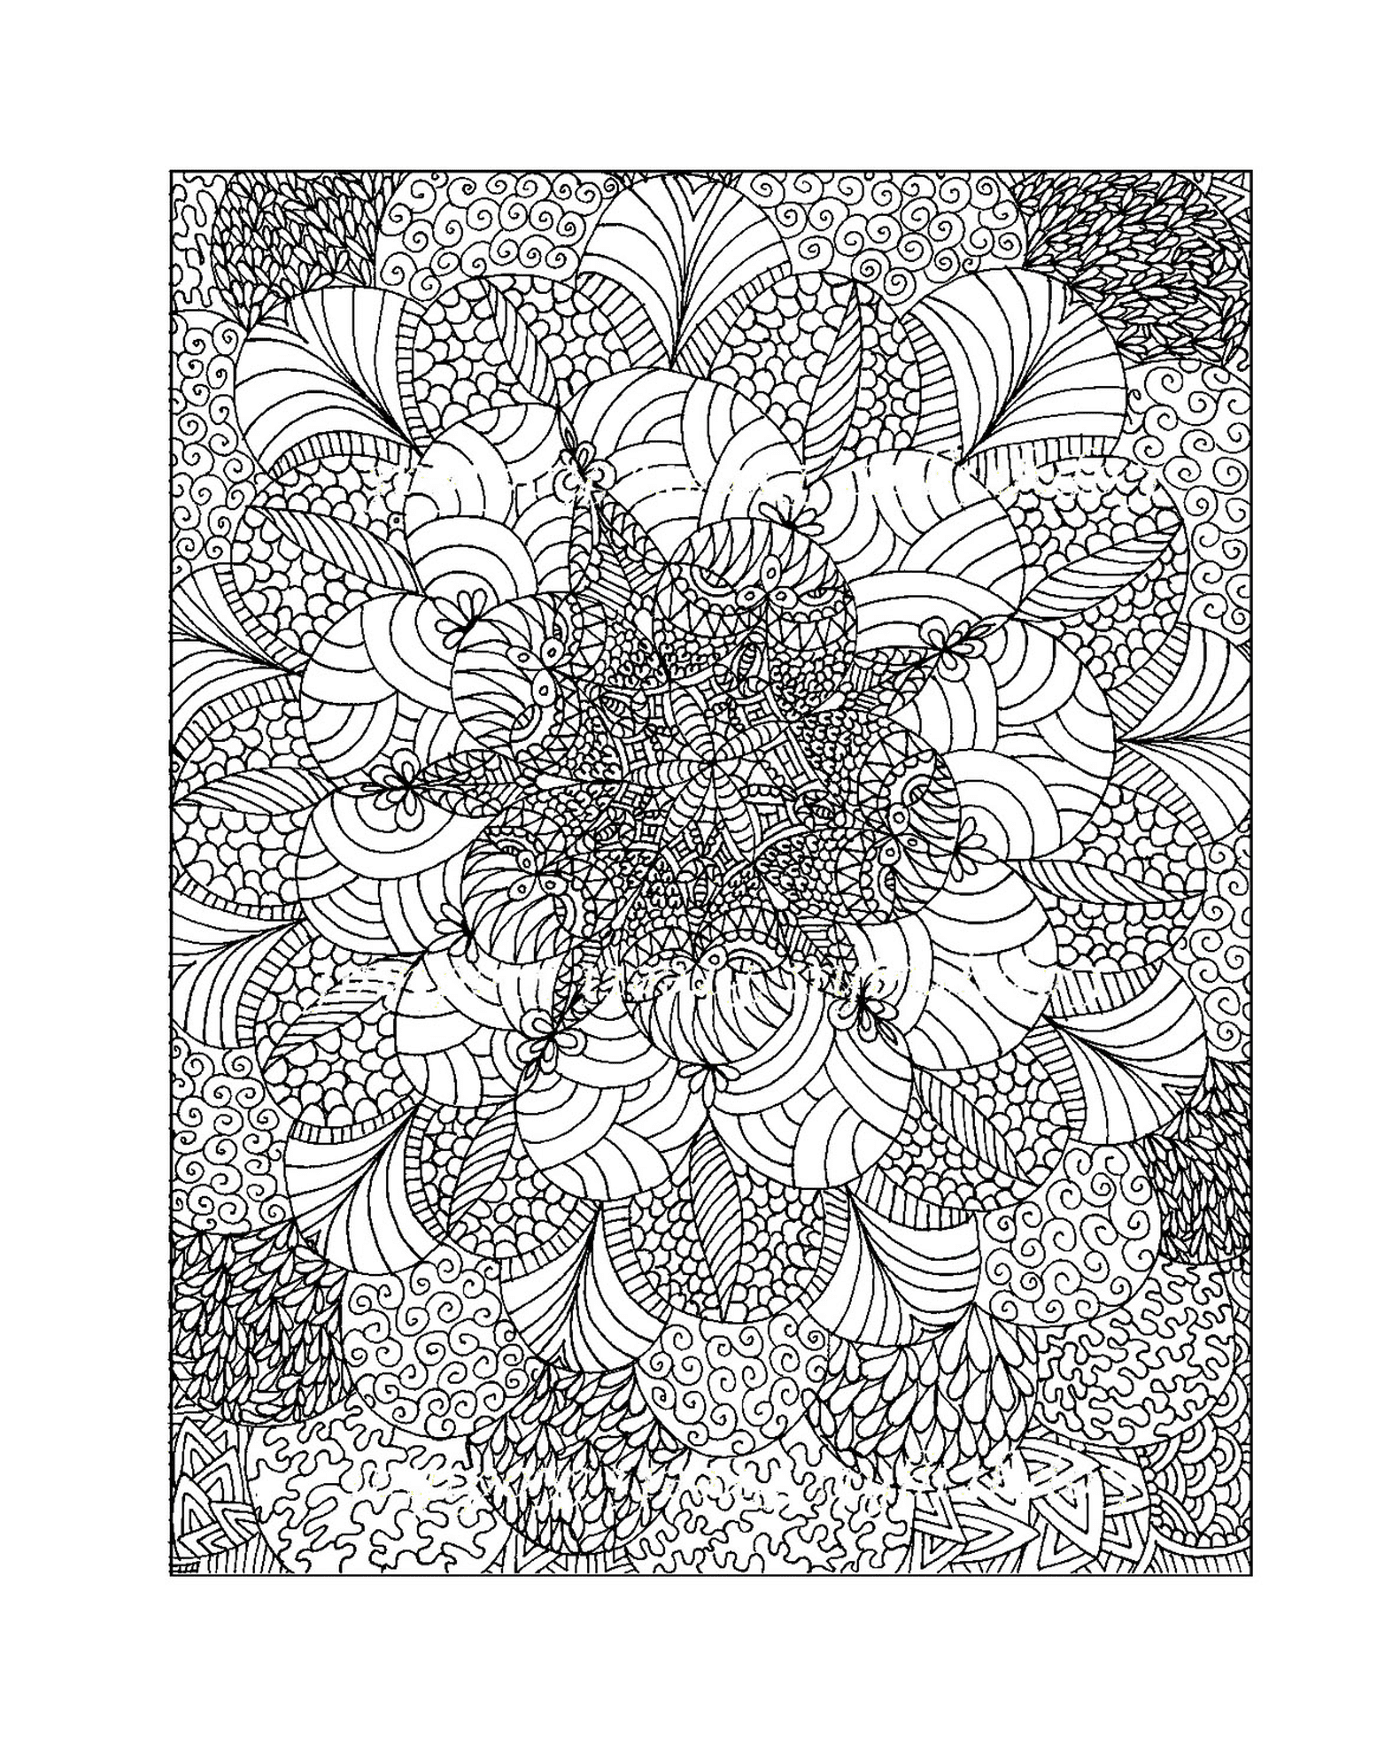  Zeichnung komplexer Blumen 